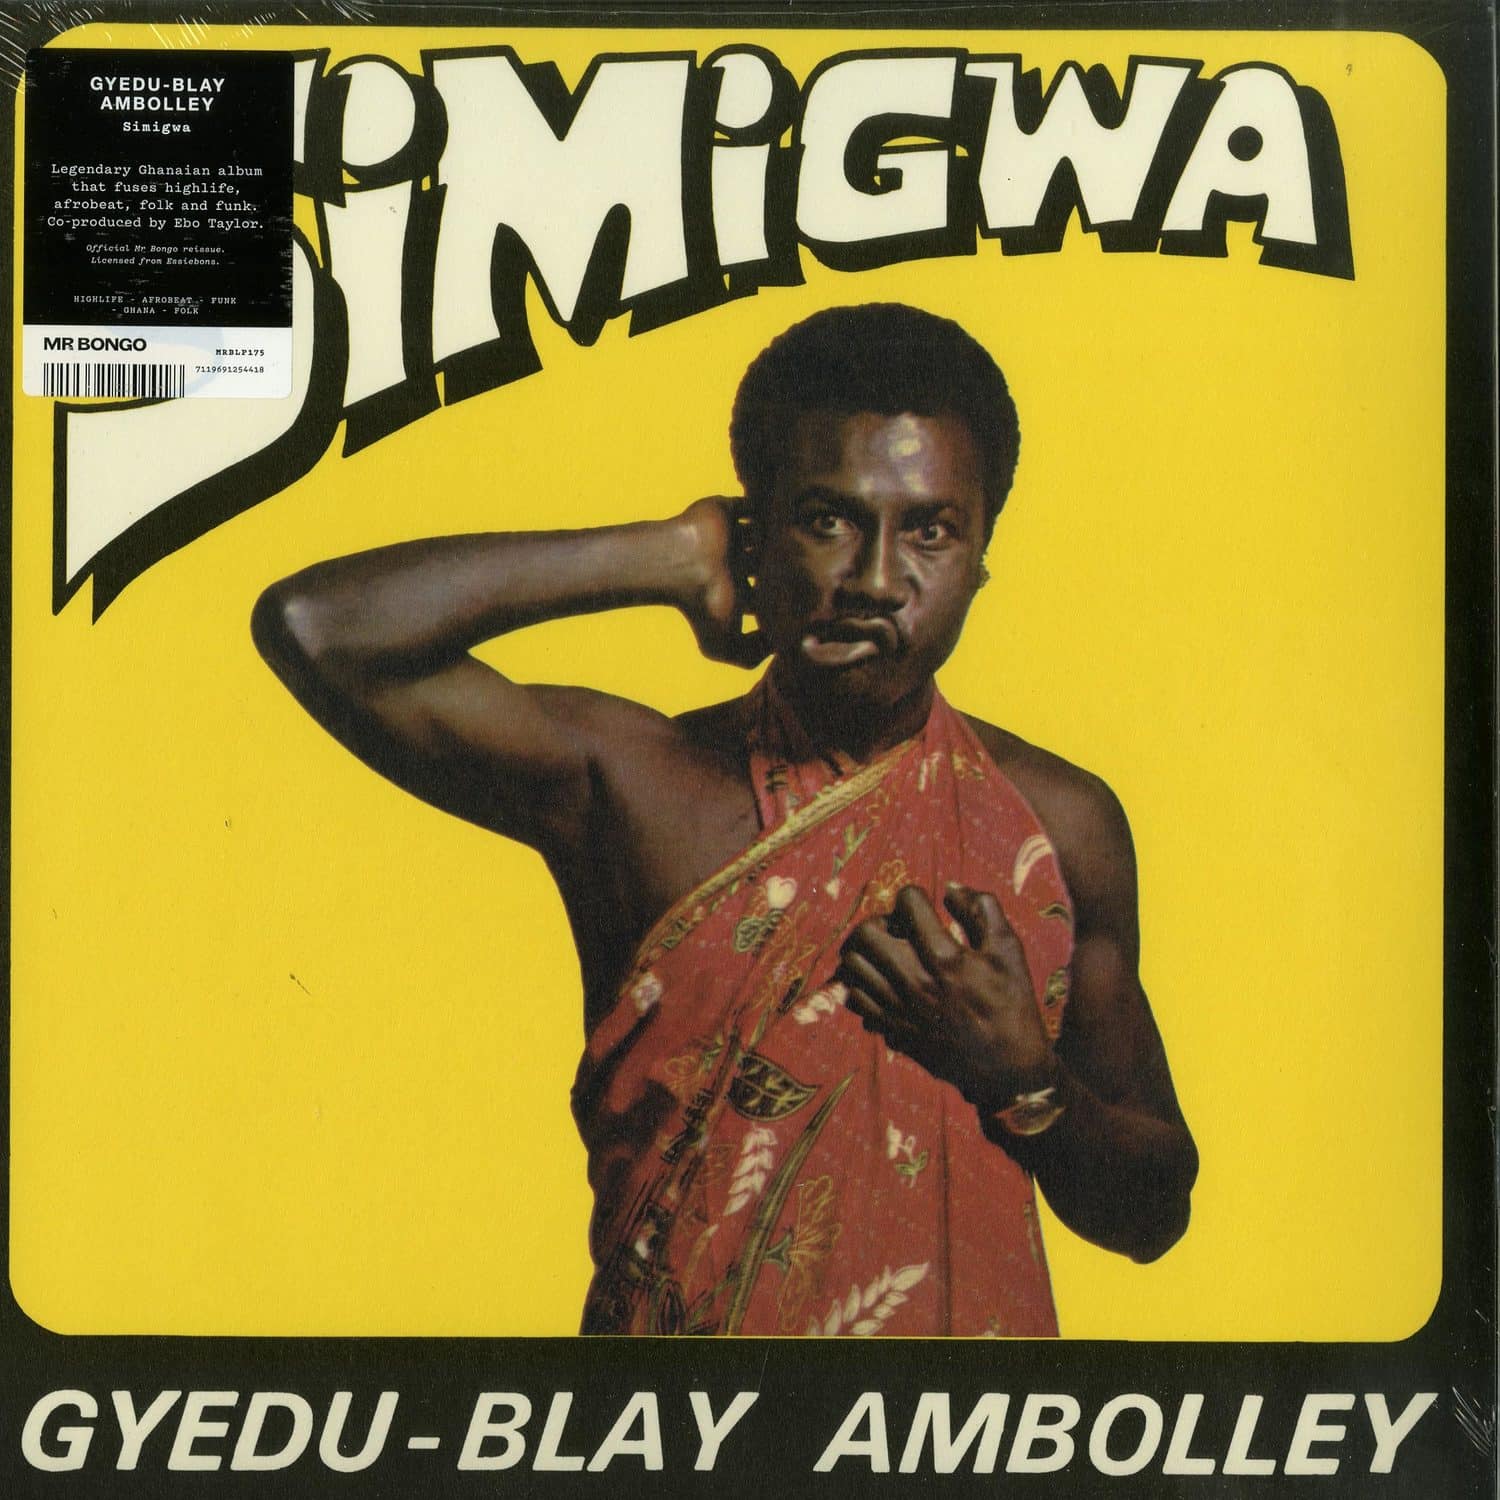 Gyedu-Blay Ambolley - SIMIGWA 